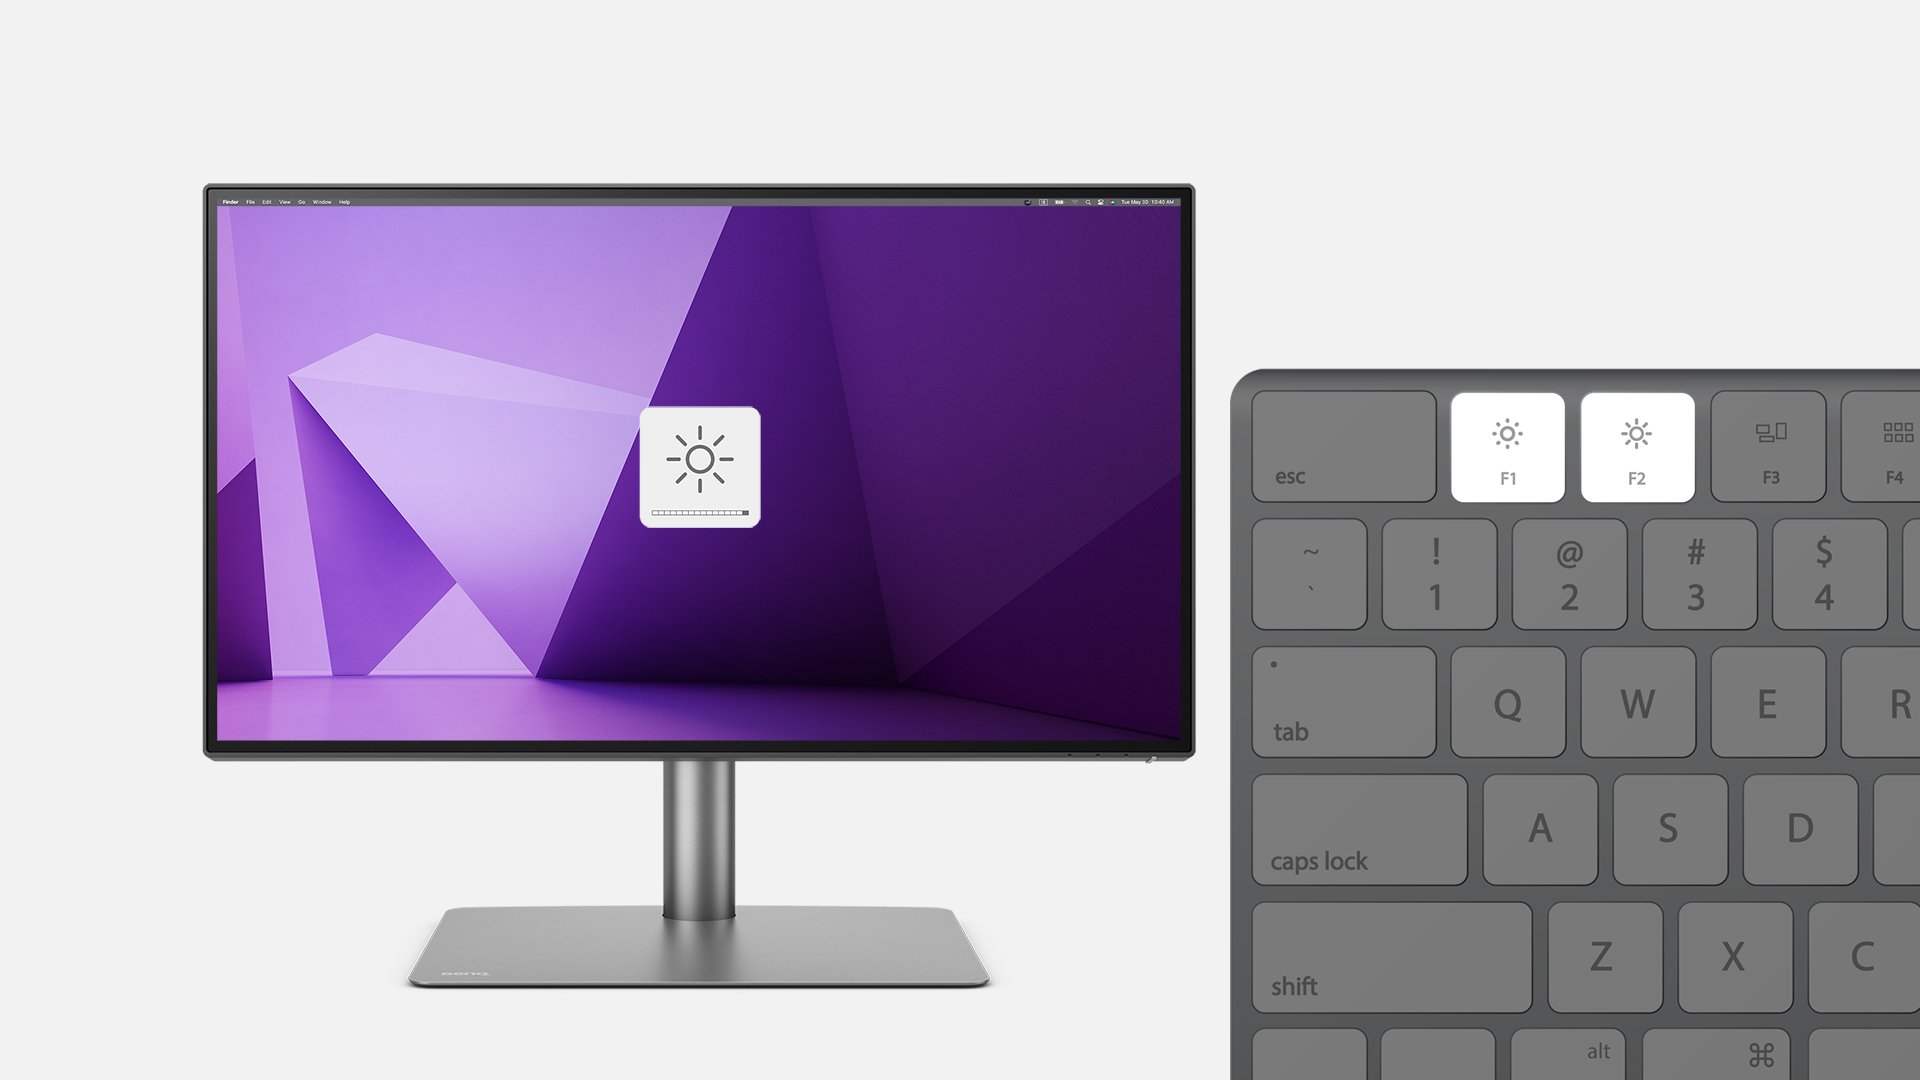 Display Pilot 2 simplifică managementul ecranului, oferind un control convenabil asupra luminozității și volumului cu ajutorul tastaturii Mac®. De asemenea, tastatura comută cu ușurință între sursele de intrare, activează pivotarea automată și vă partiționează desktop-ul.